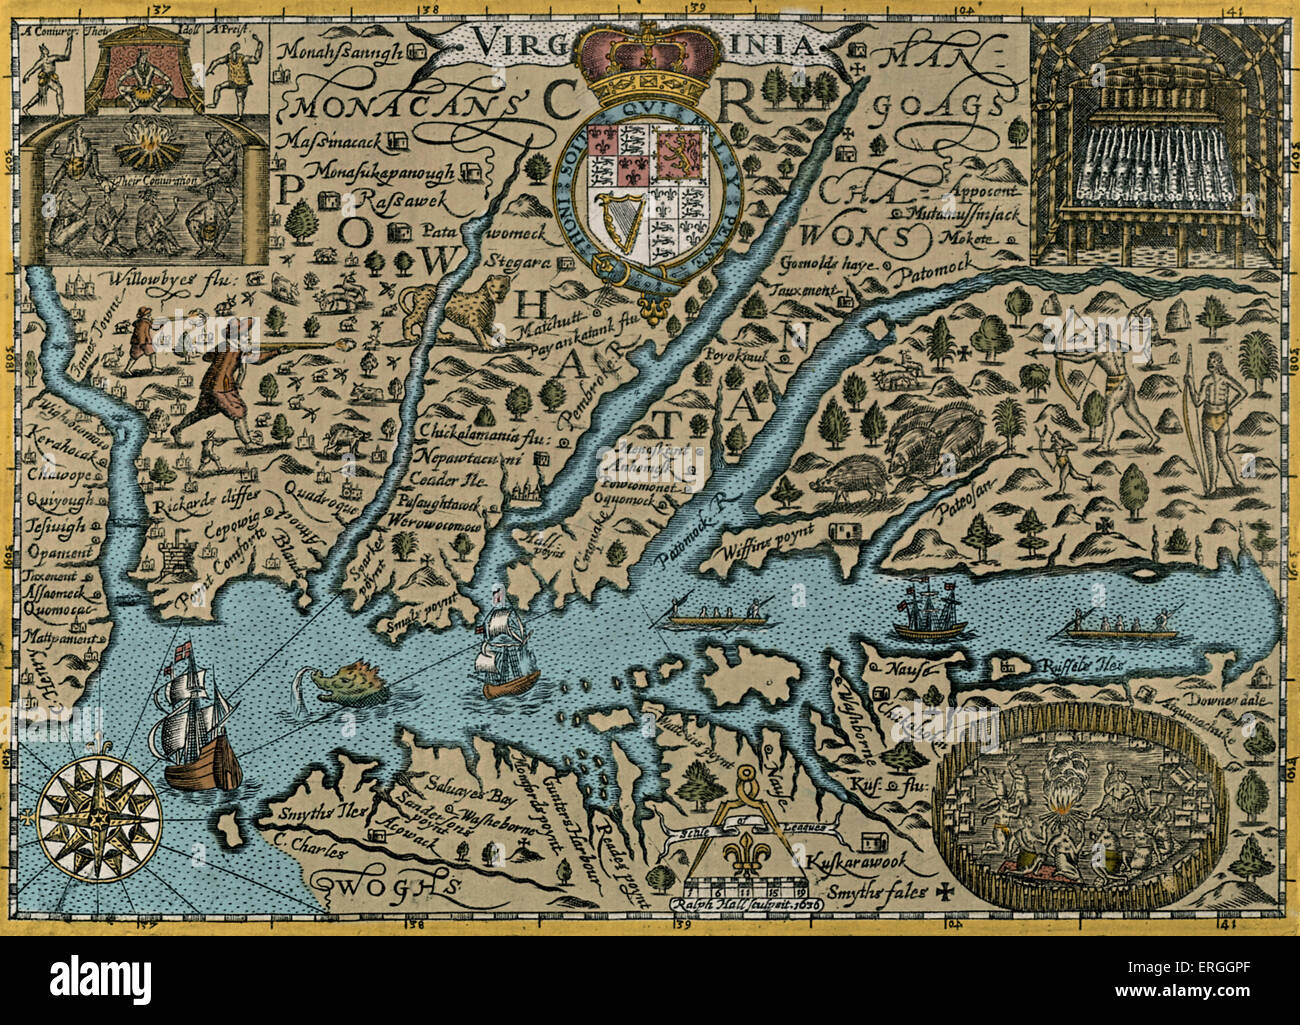 Karte von Virginia - 1635 in Mercators "Historia Mundi", veröffentlicht. Stockfoto